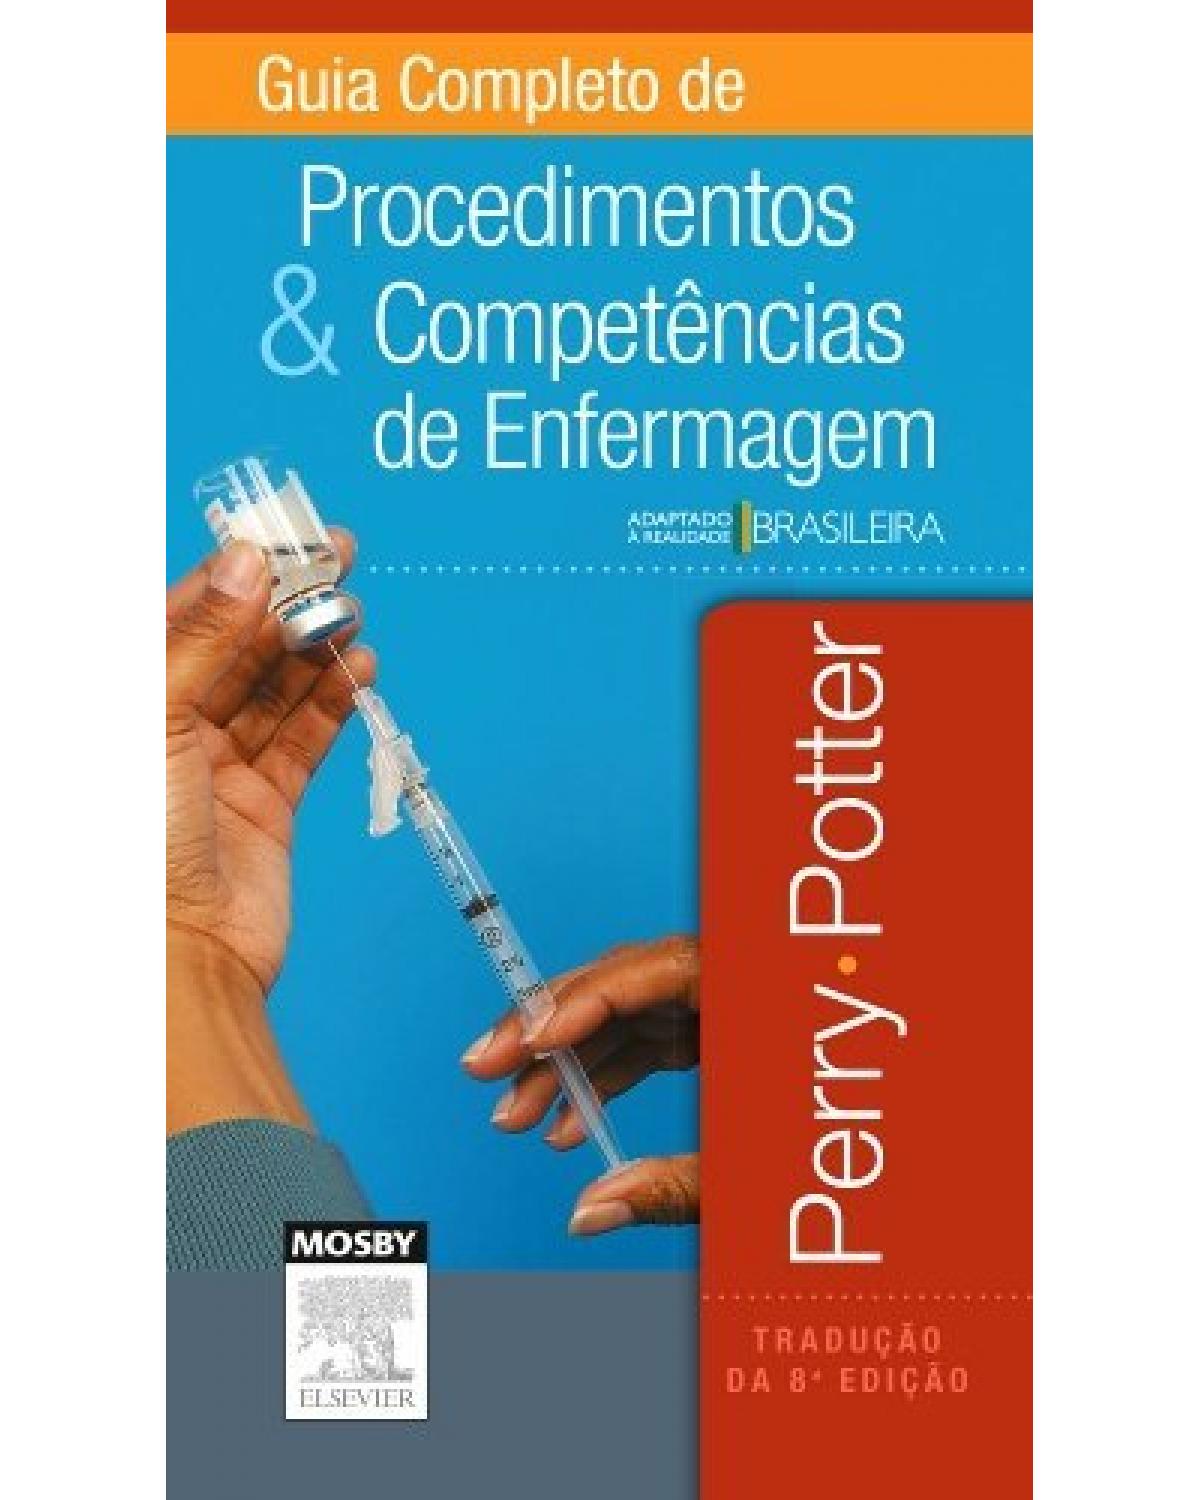 Guia completo de procedimentos e competências de enfermagem - 8ª Edição | 2015